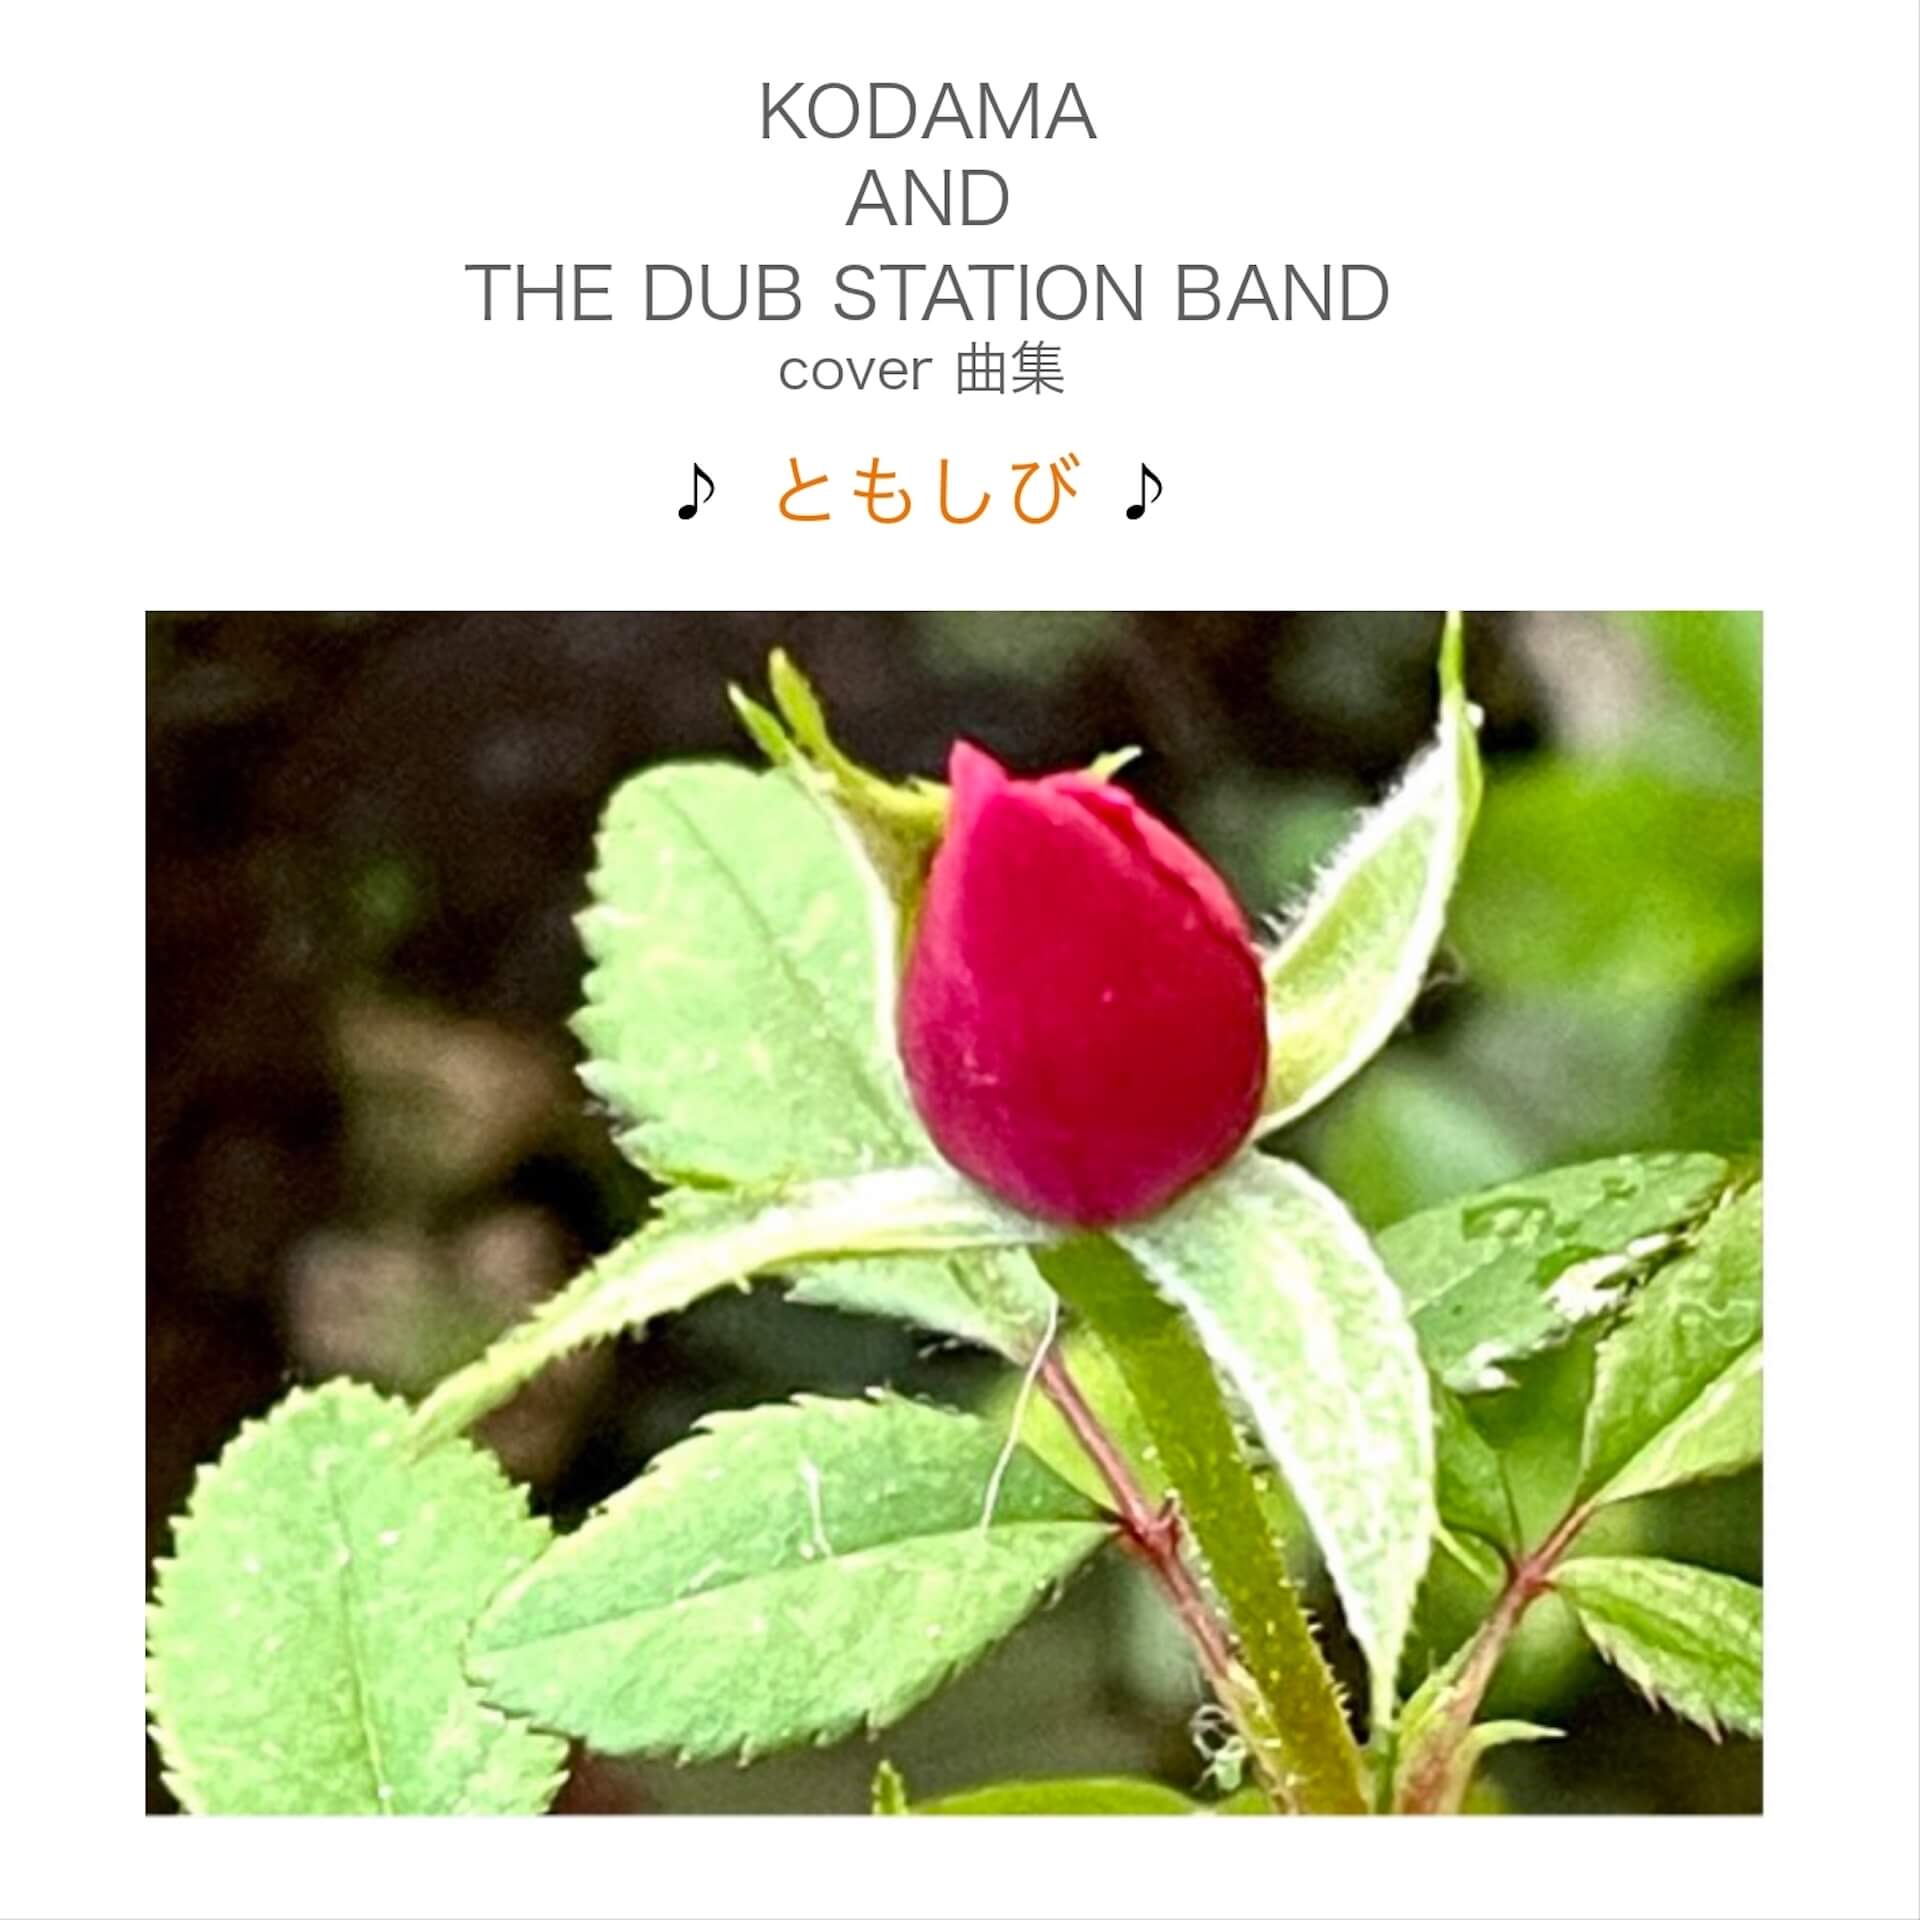 こだま和文が率いる「KODAMA AND THE DUB STATION BAND」の4年ぶりとなるアルバムリリースを記念した単独公演がWWWにて開催 music230824-kodama-and-the-dub-station-band3